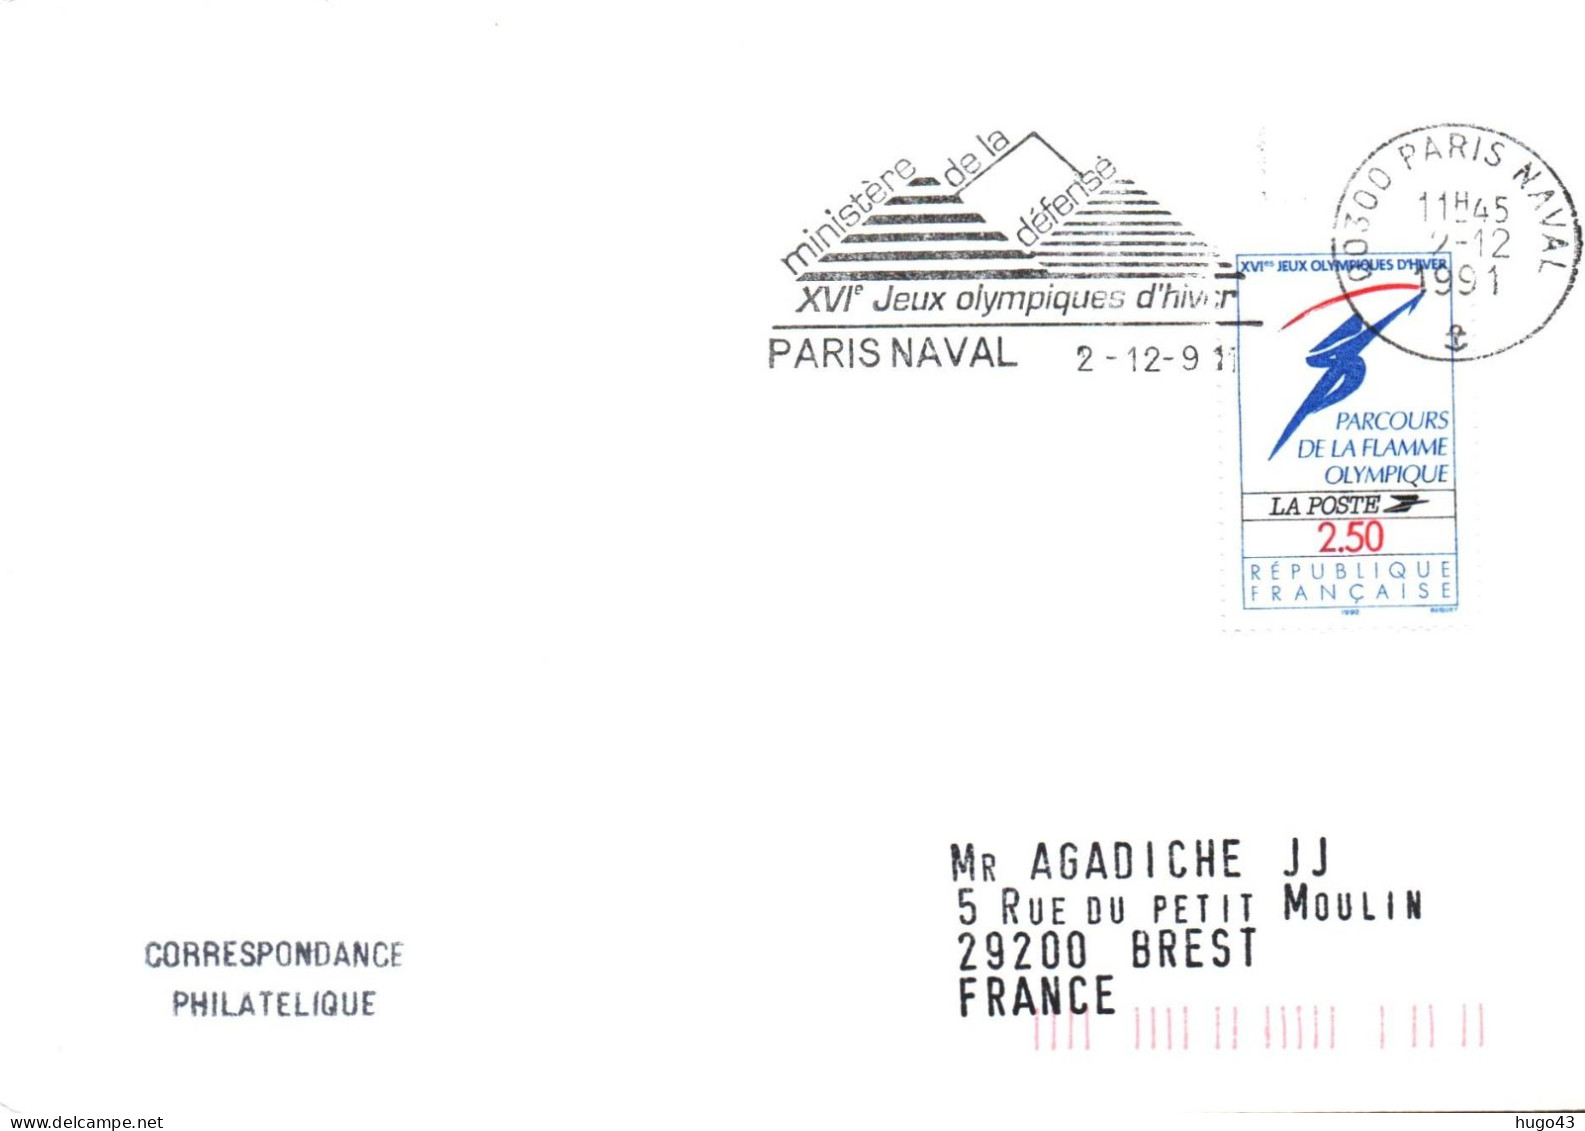 ENVELOPPE AVEC FLAMME PARIS NAVAL LE 02/12/1991 - XVIe JEUX OLYMPIQUES D' HIVER EN 1992 - Naval Post